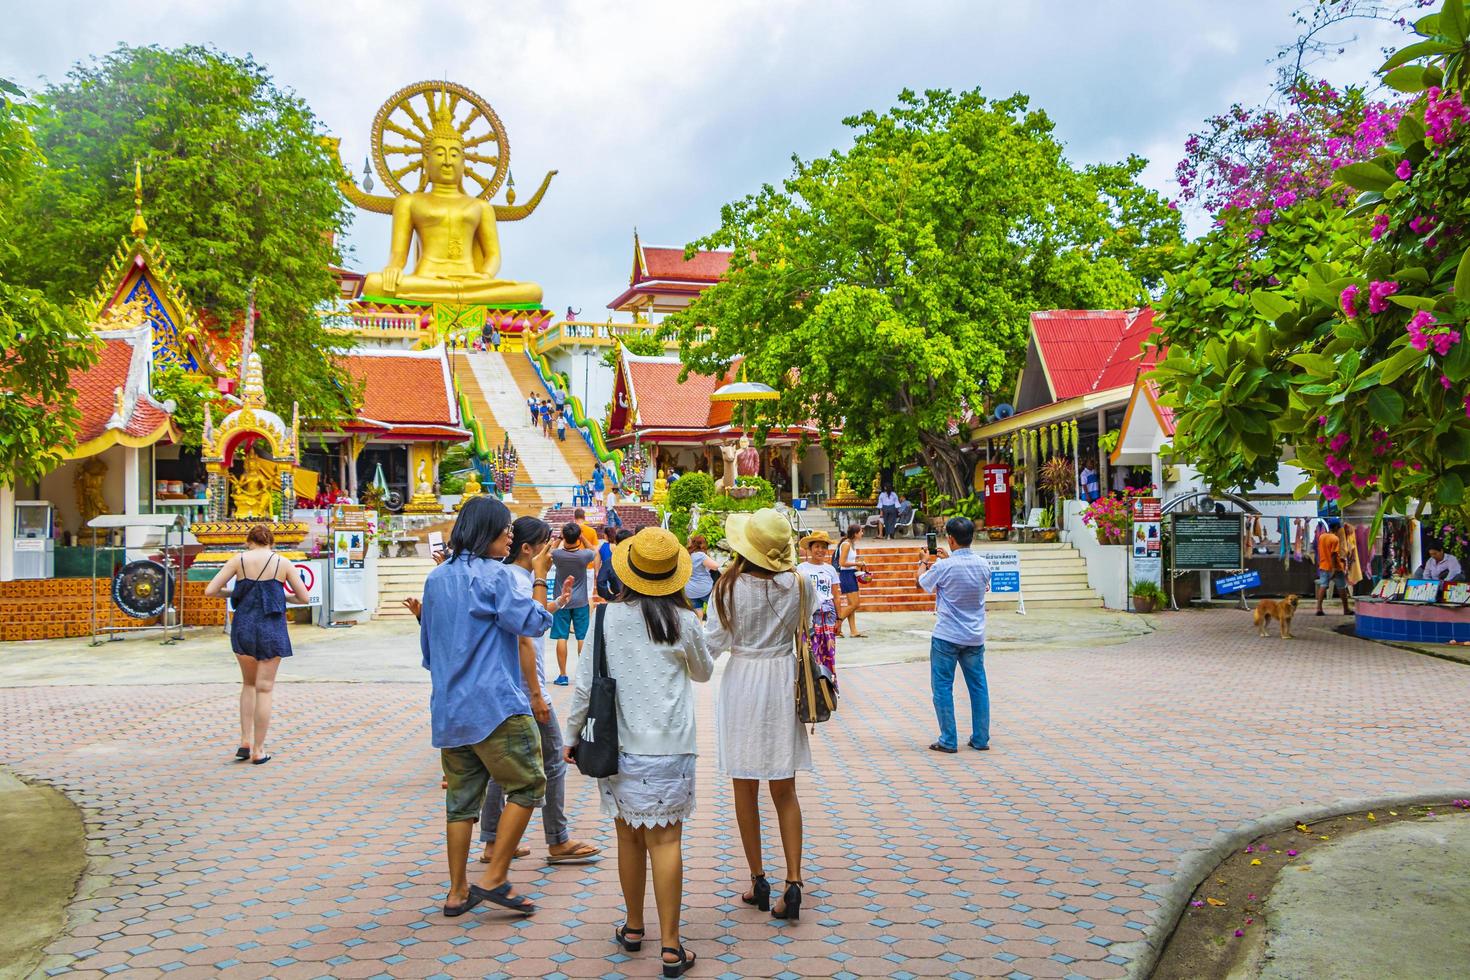 Les gens à la statue de bouddha d'or au temple wat phra yai, koh samui, thaïlande, 2018 photo